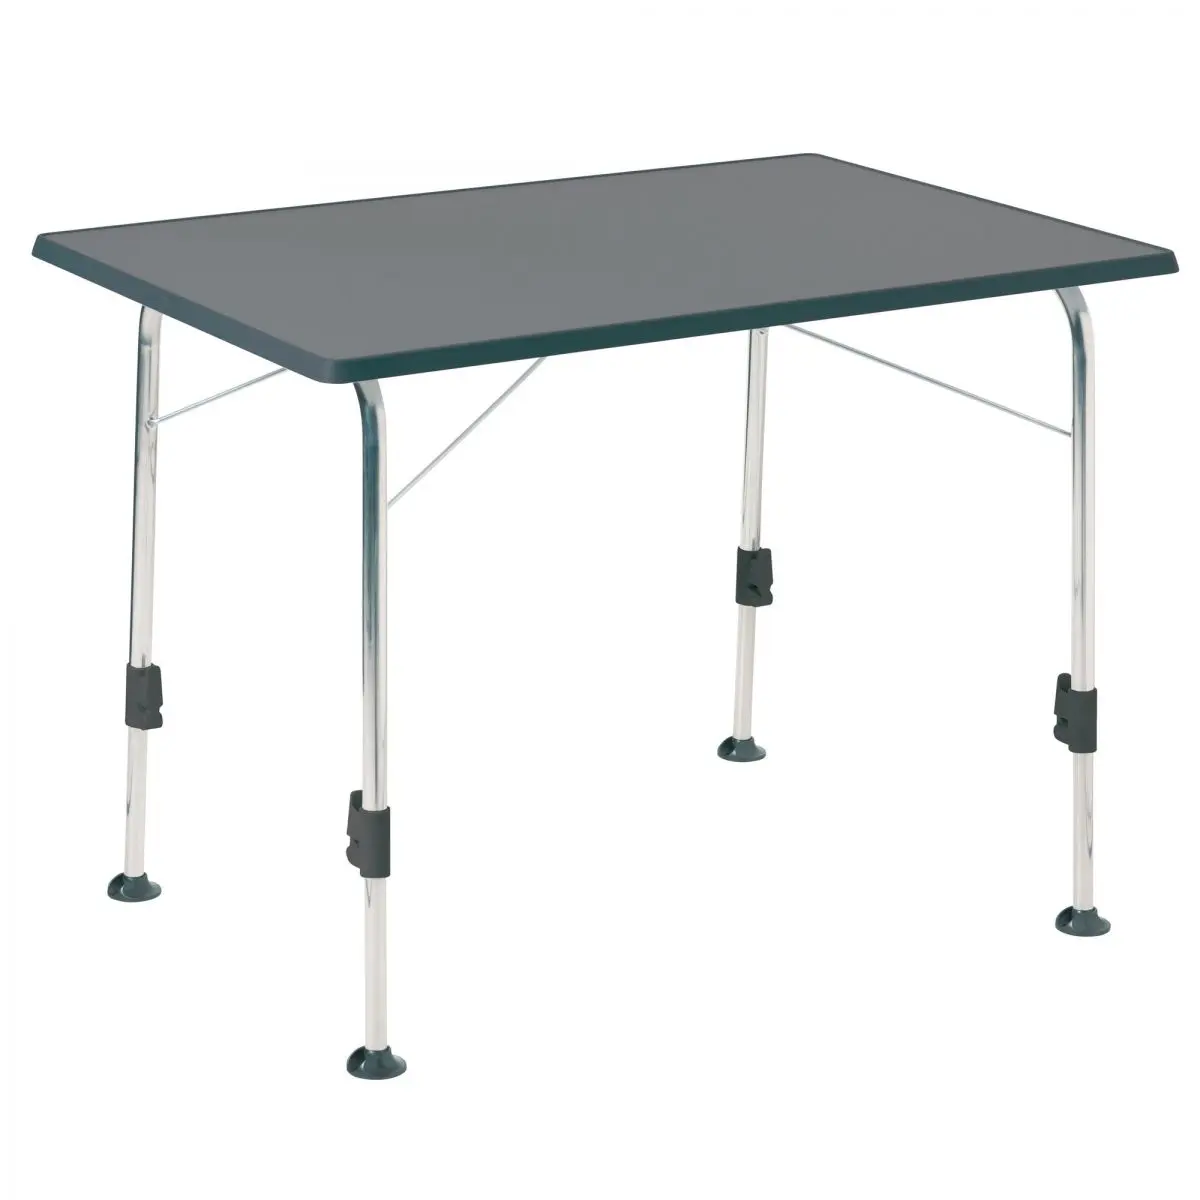 Stabilizačný kempingový stôl - antracit, 100 x 68 cm